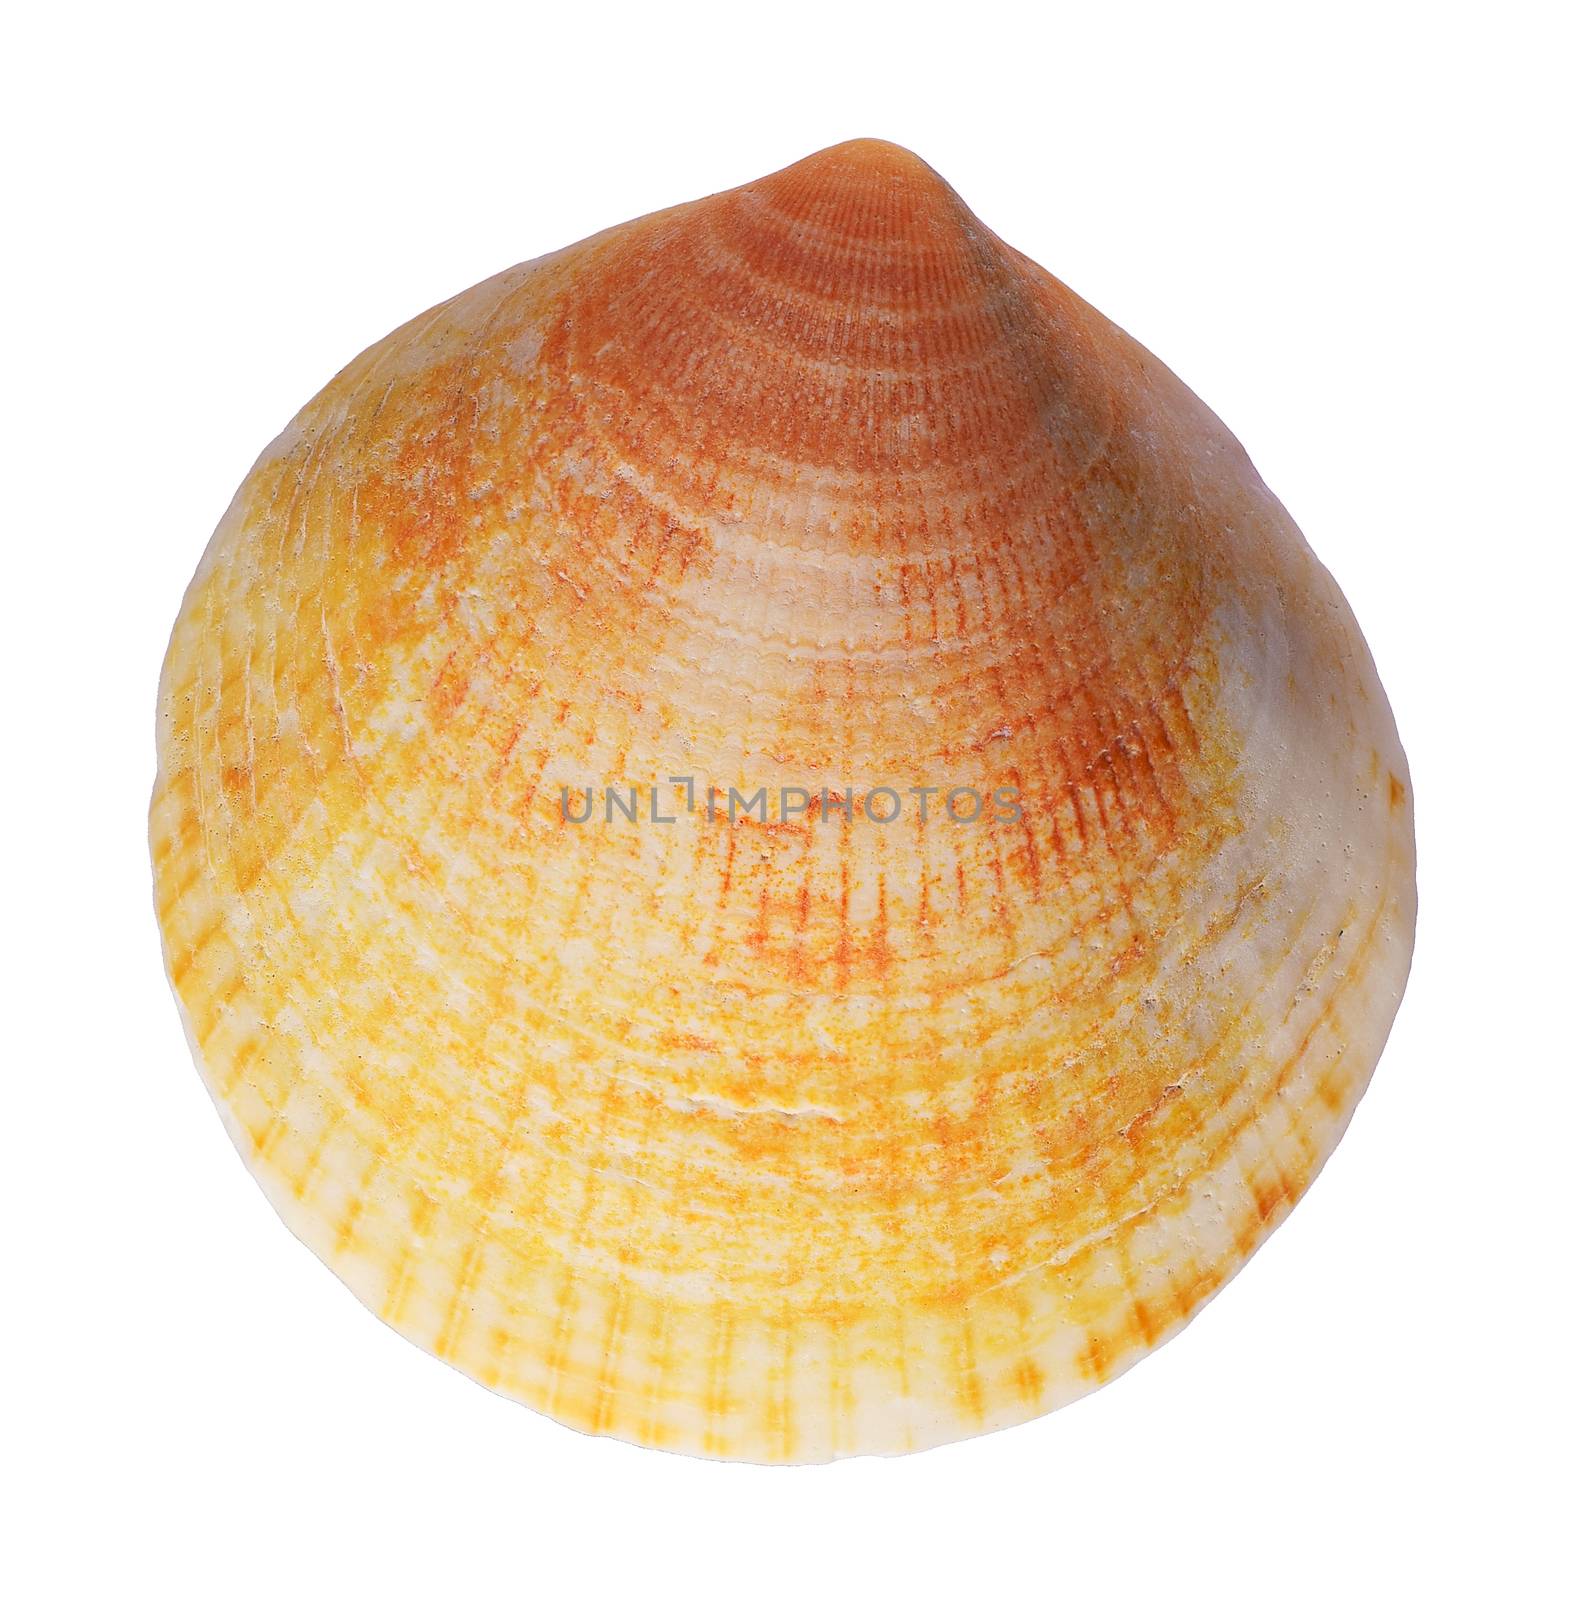 shell. sea mollusk